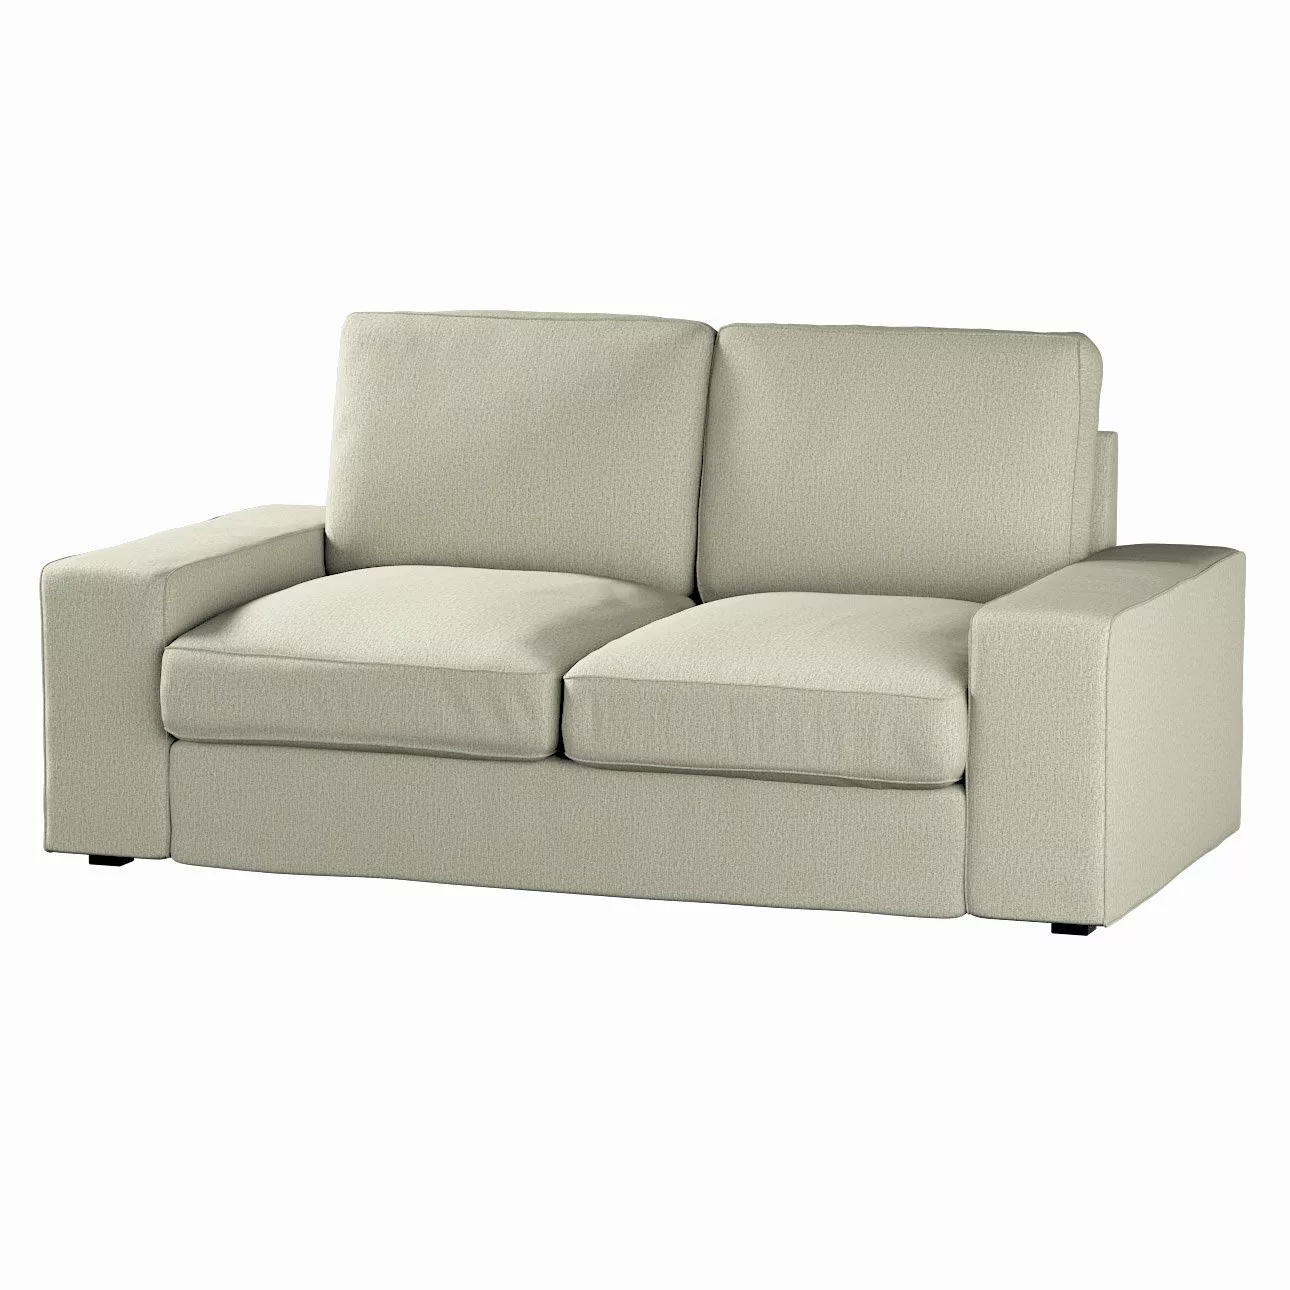 Bezug für Kivik 2-Sitzer Sofa, beige, Bezug für Sofa Kivik 2-Sitzer, Madrid günstig online kaufen